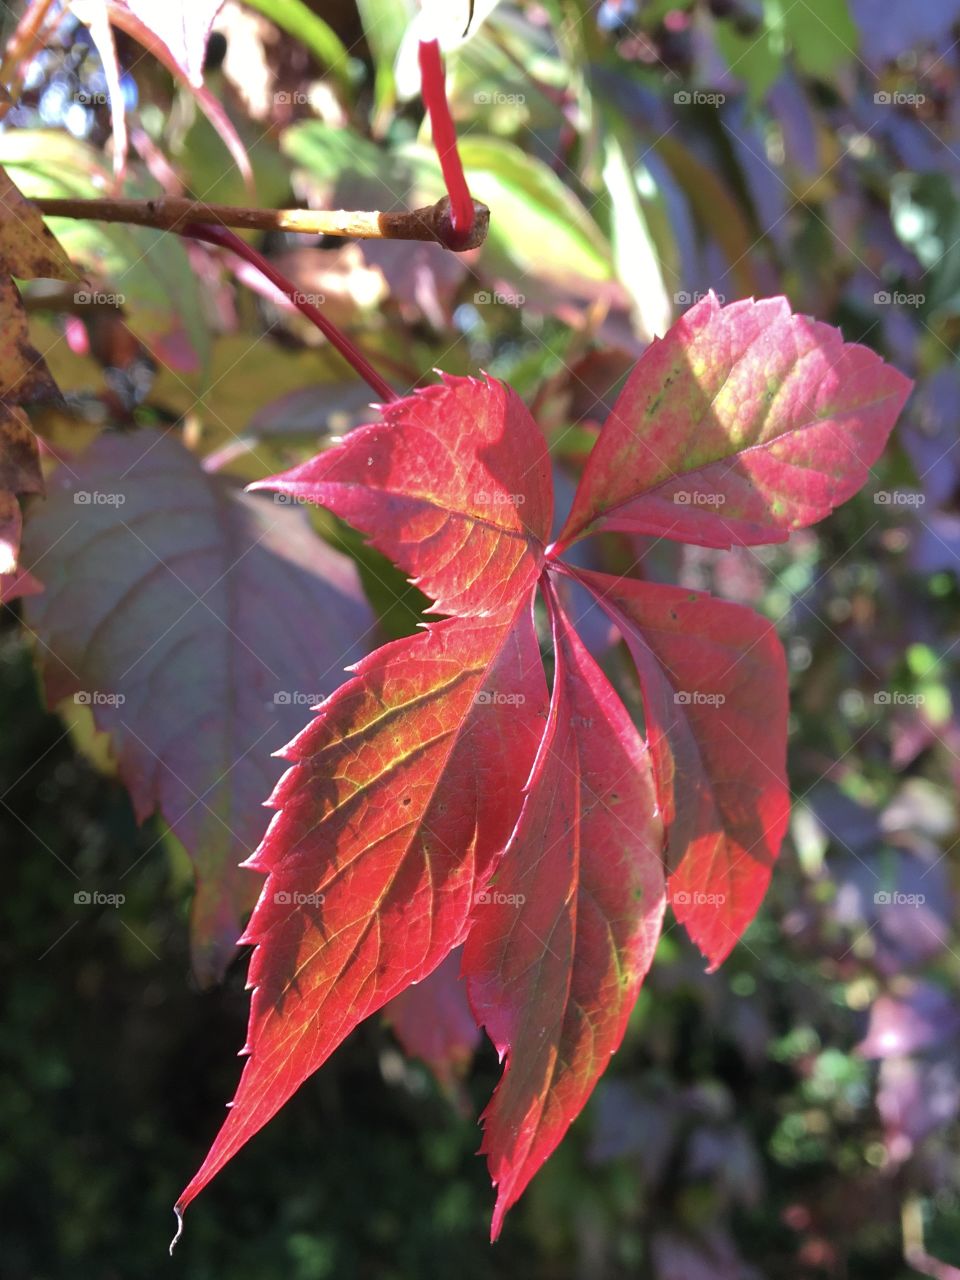 Leaf of Virginia creeper in full autumn